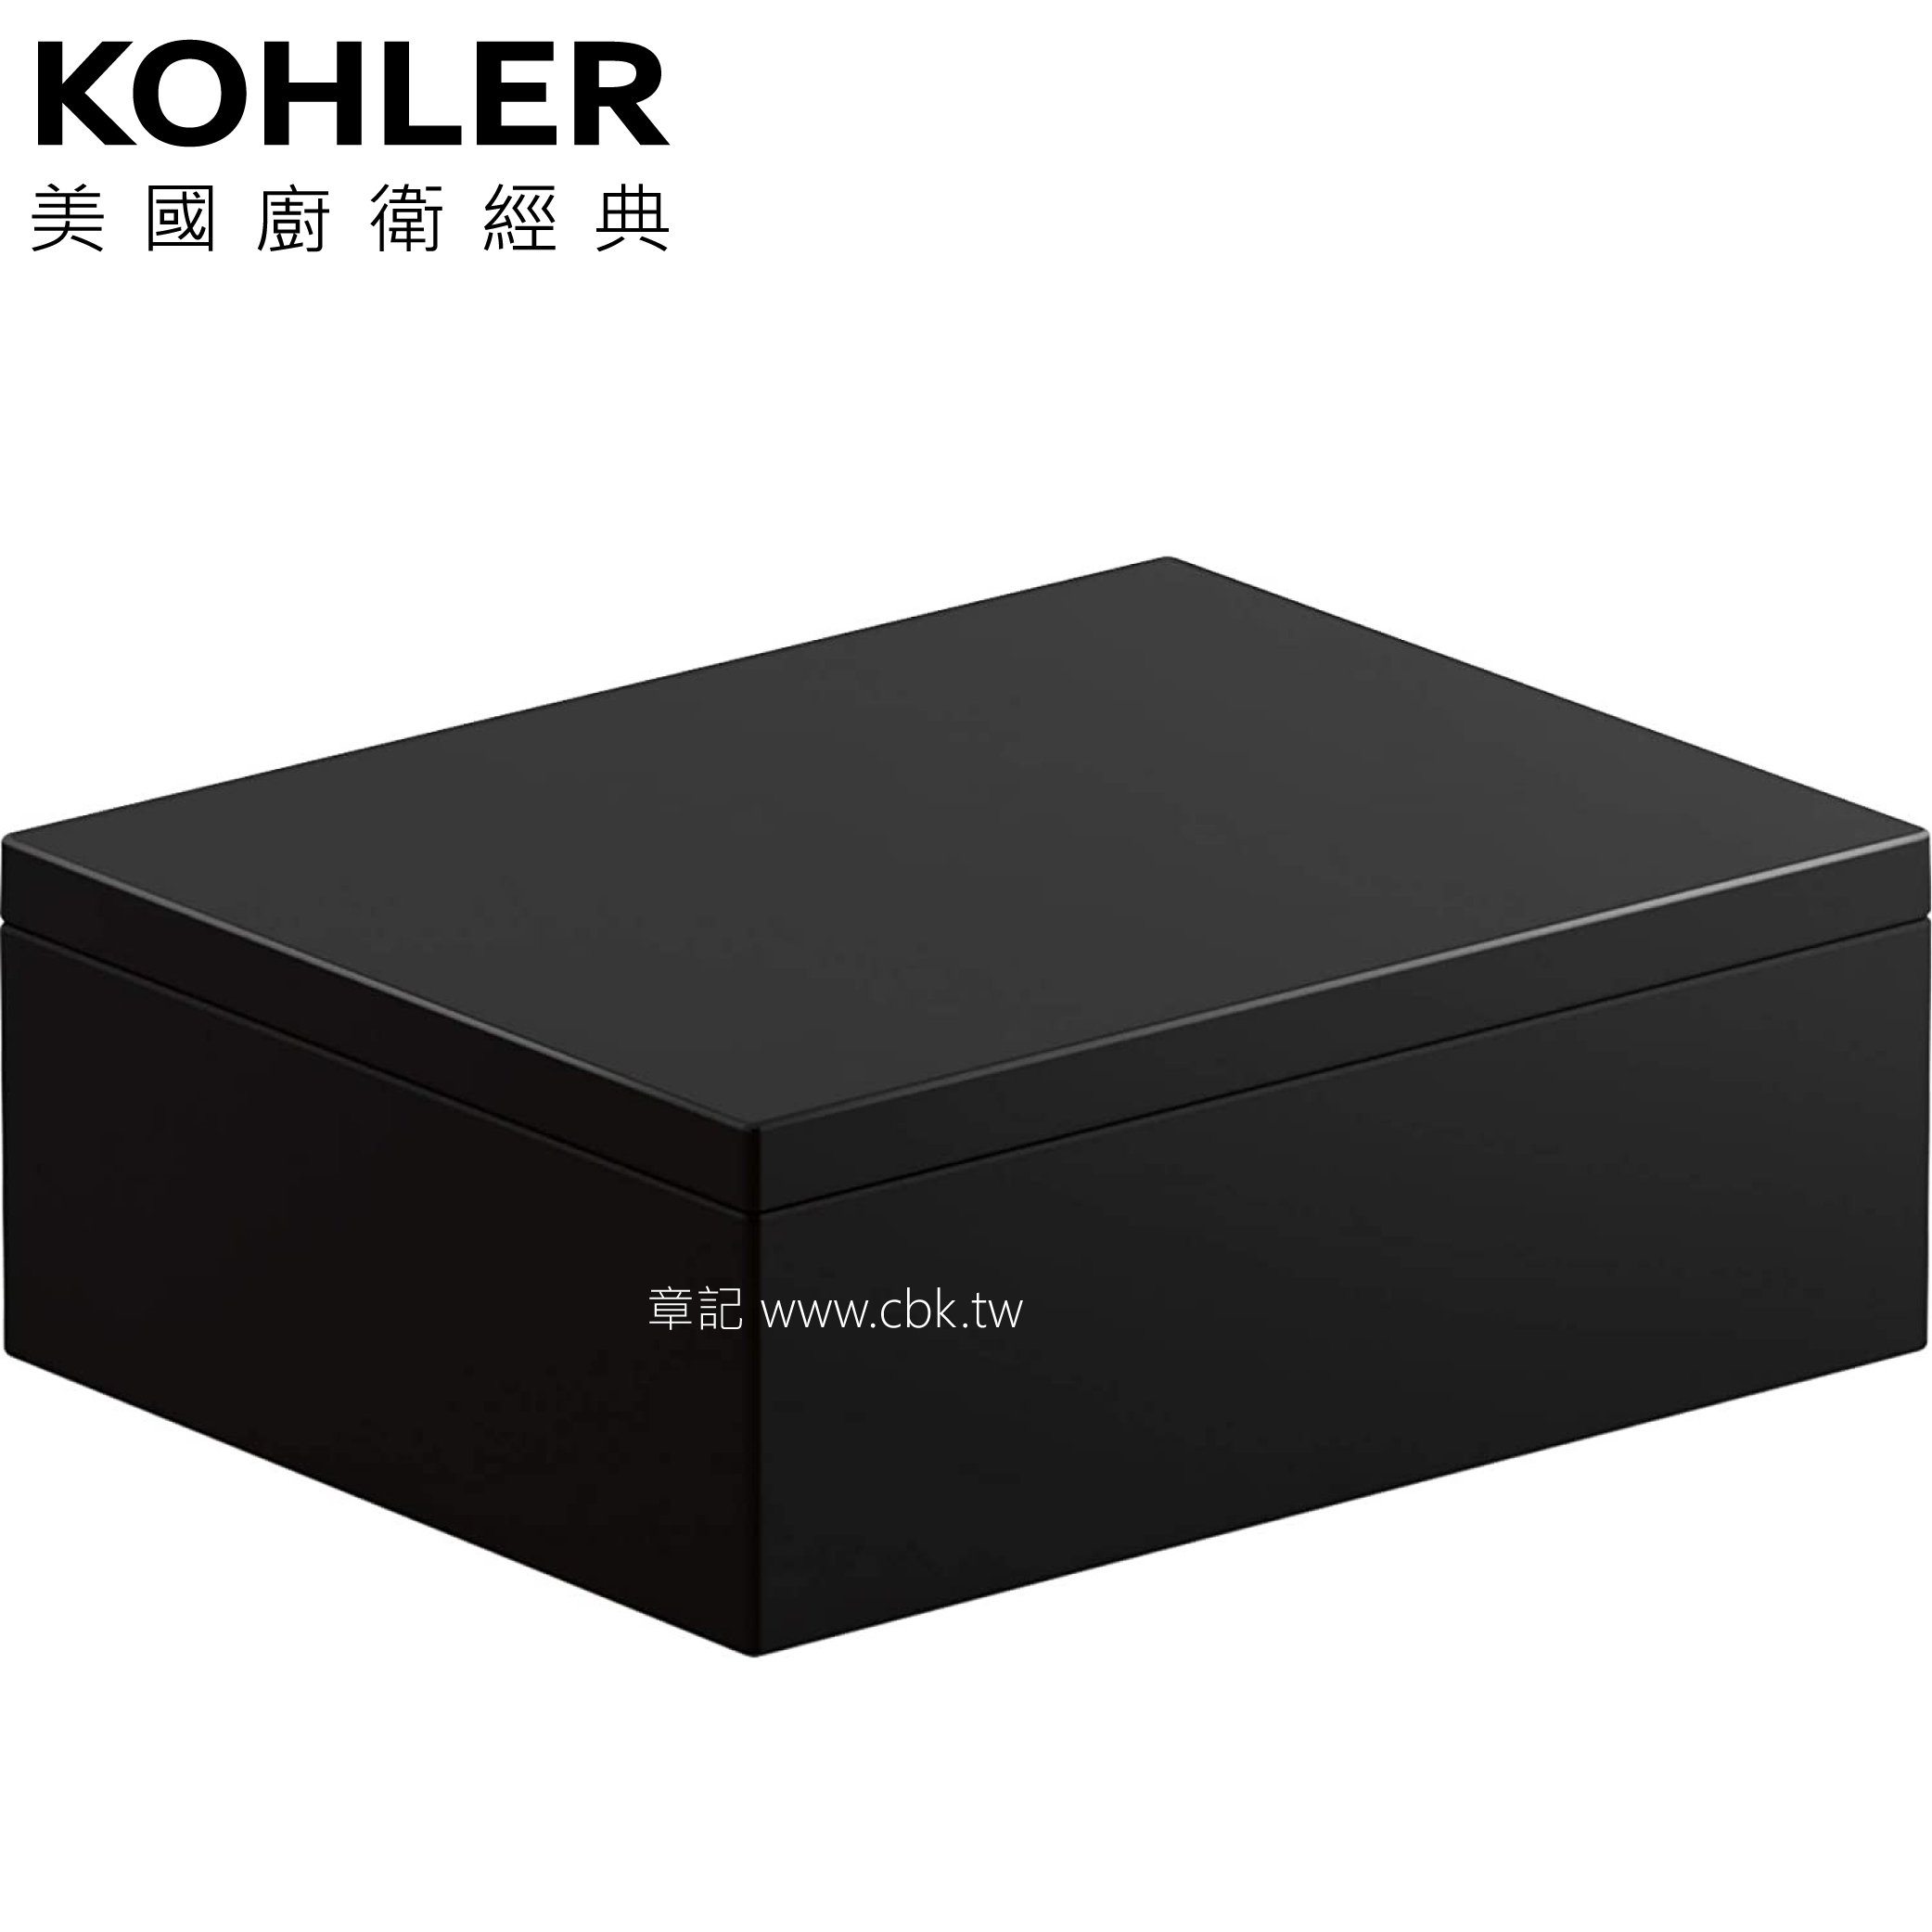 KOHLER Stages 儲物盒 K-27365T-7  |浴室配件|置物架 | 置物櫃